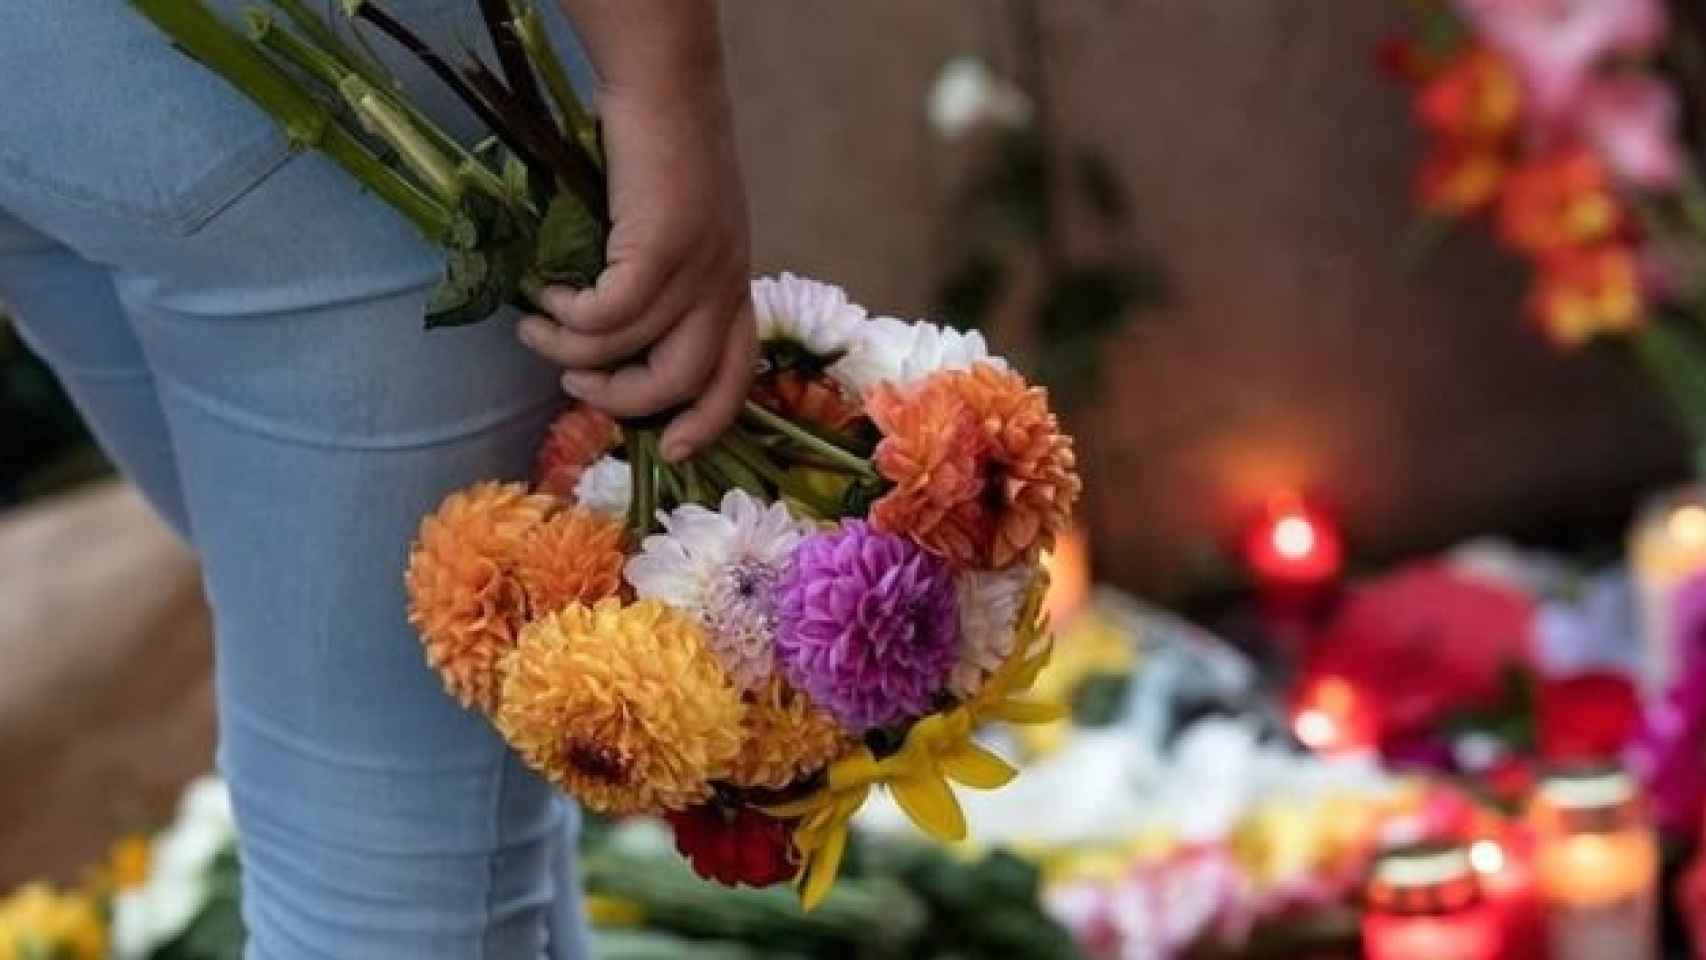 Una ciudadana muestra sus condolencias con un ramo de flores por las víctimas de la masacre en Múnich.